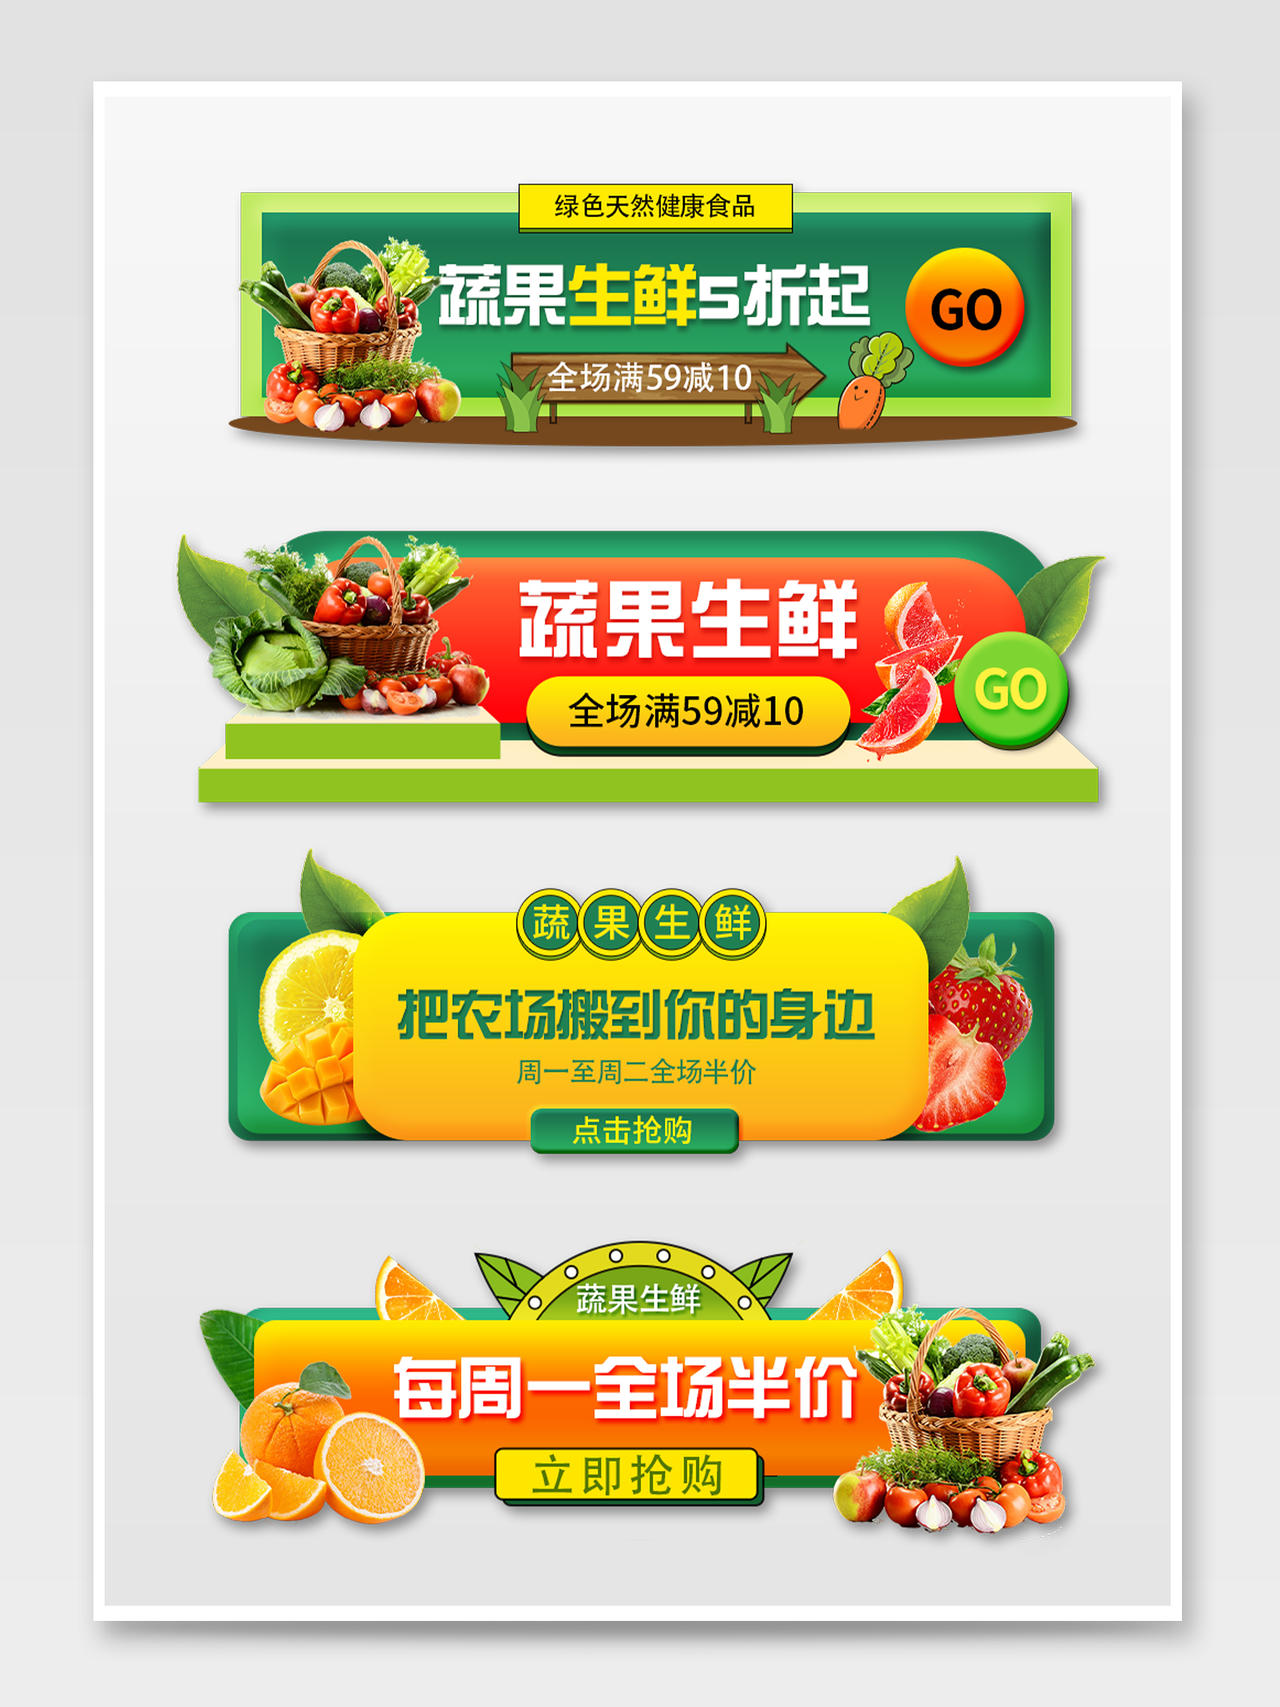 直播绿色简约大气食品生鲜水果电商促销外卖平台入口胶囊图